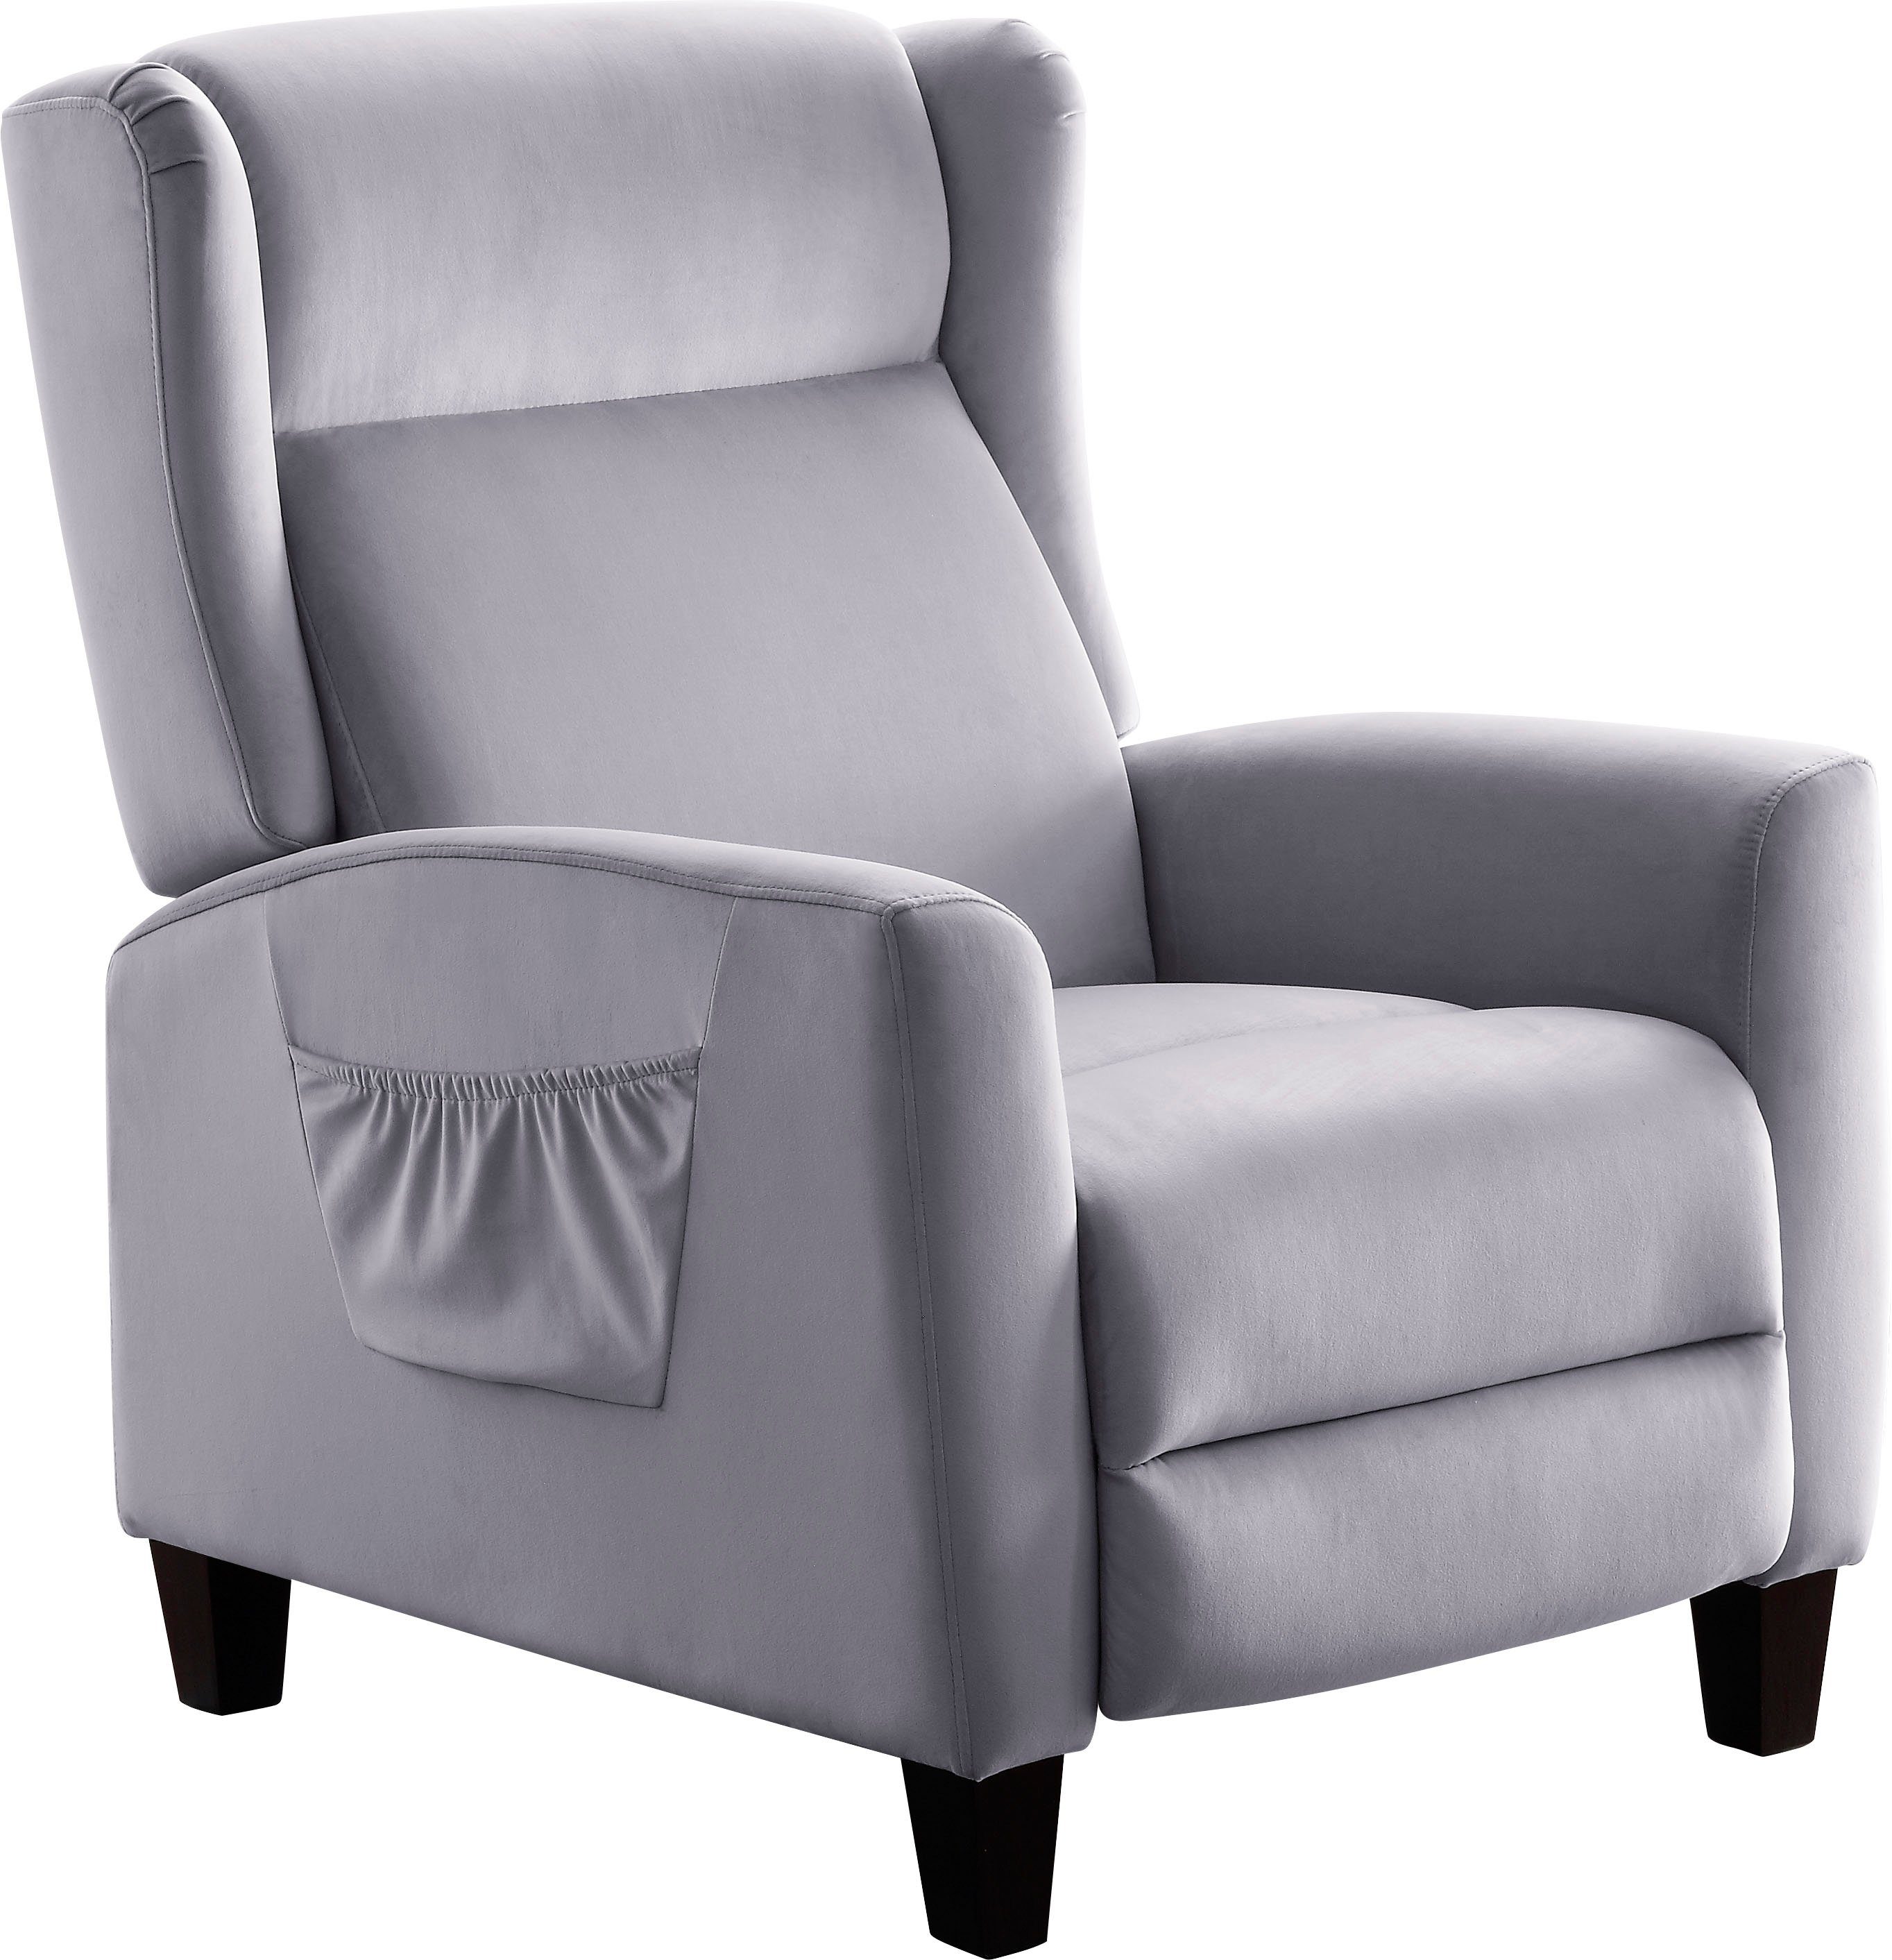 ATLANTIC home collection TV-Sessel, klassischer Крісла mit Relaxfunktion und praktischer Seitentasche